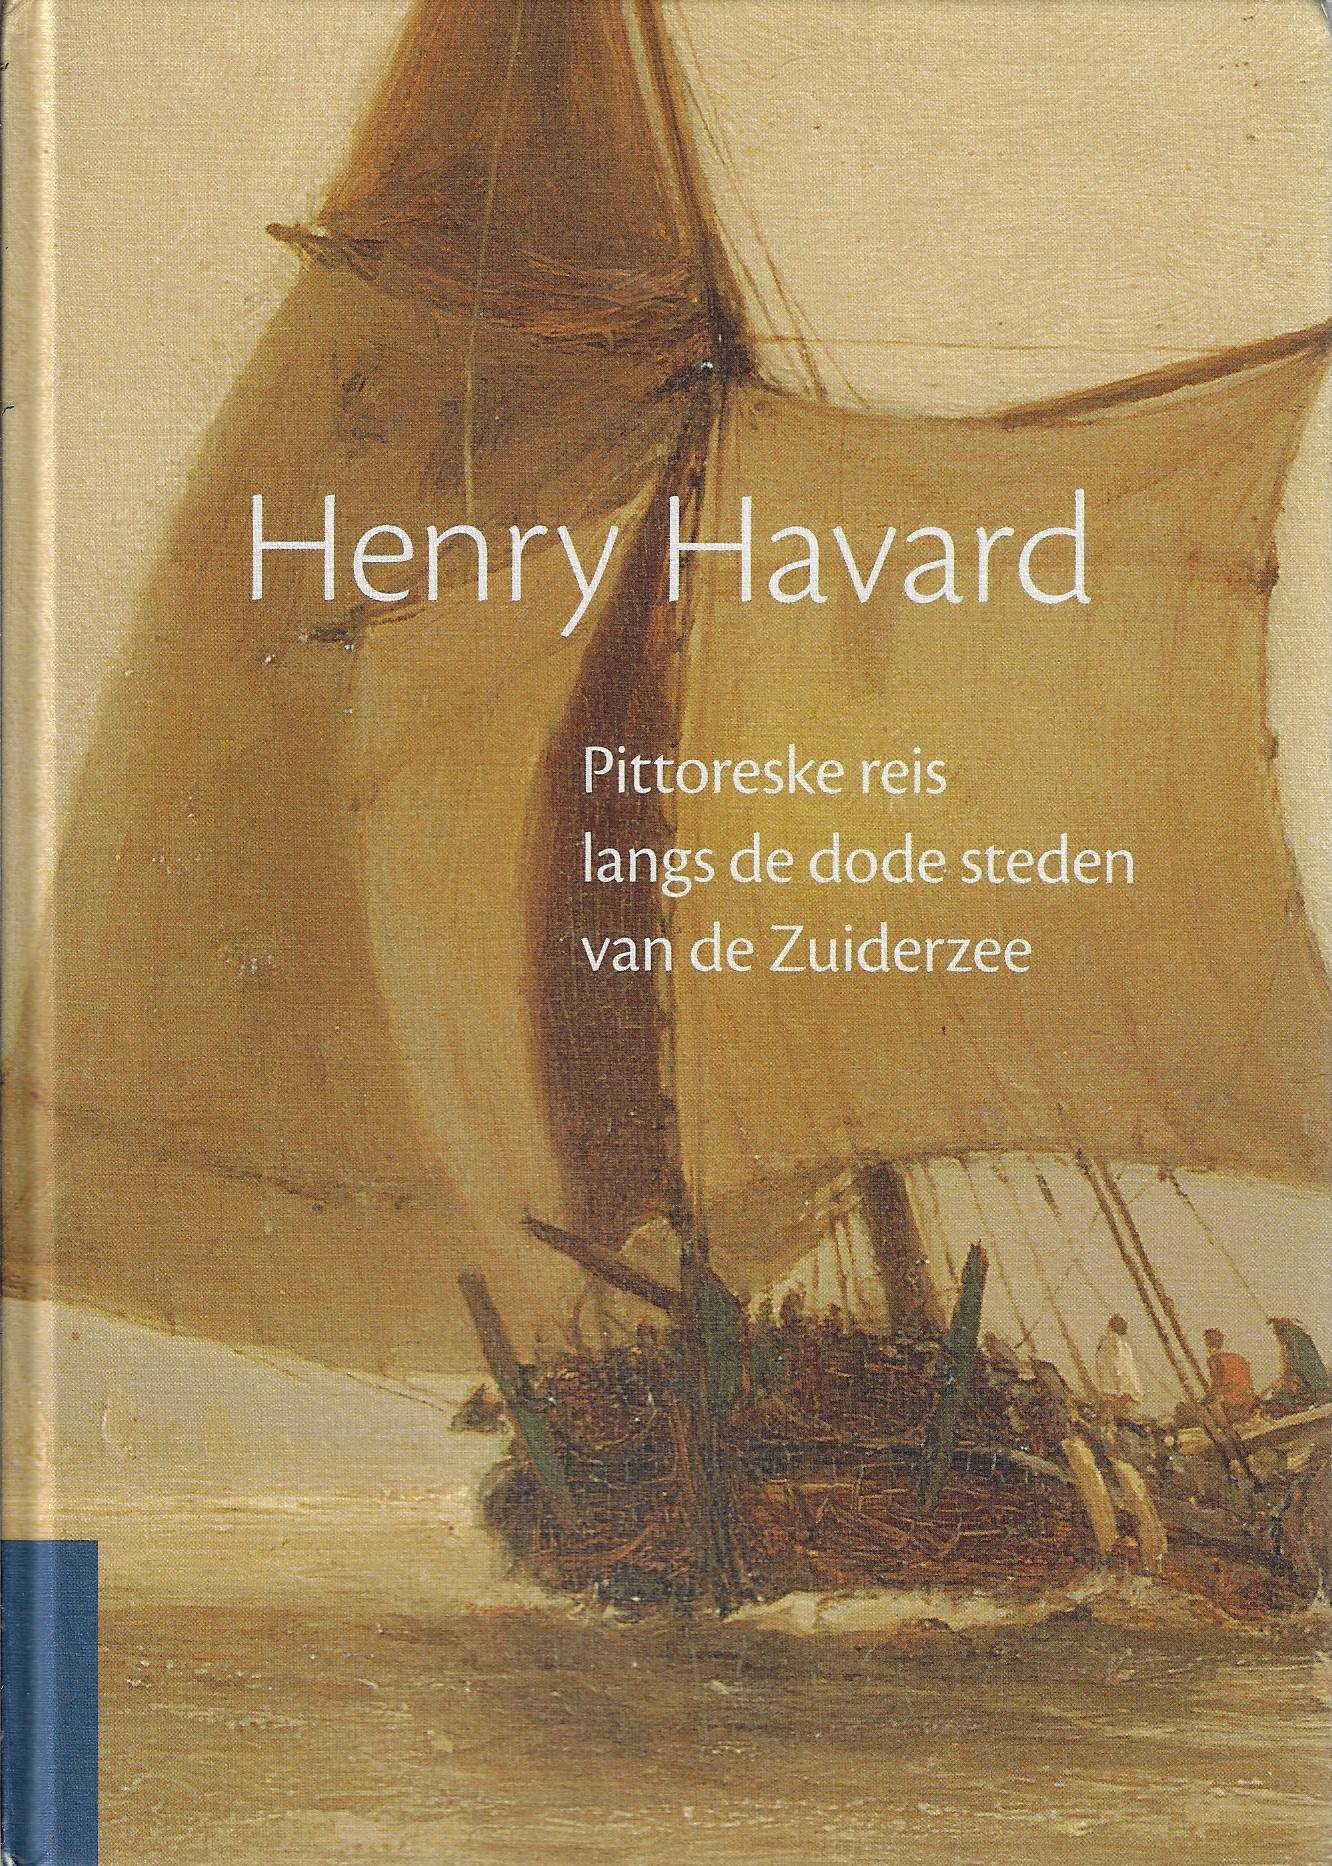 Henry Havard - Pittoreske reis langs de dode steden van de Zuiderzee